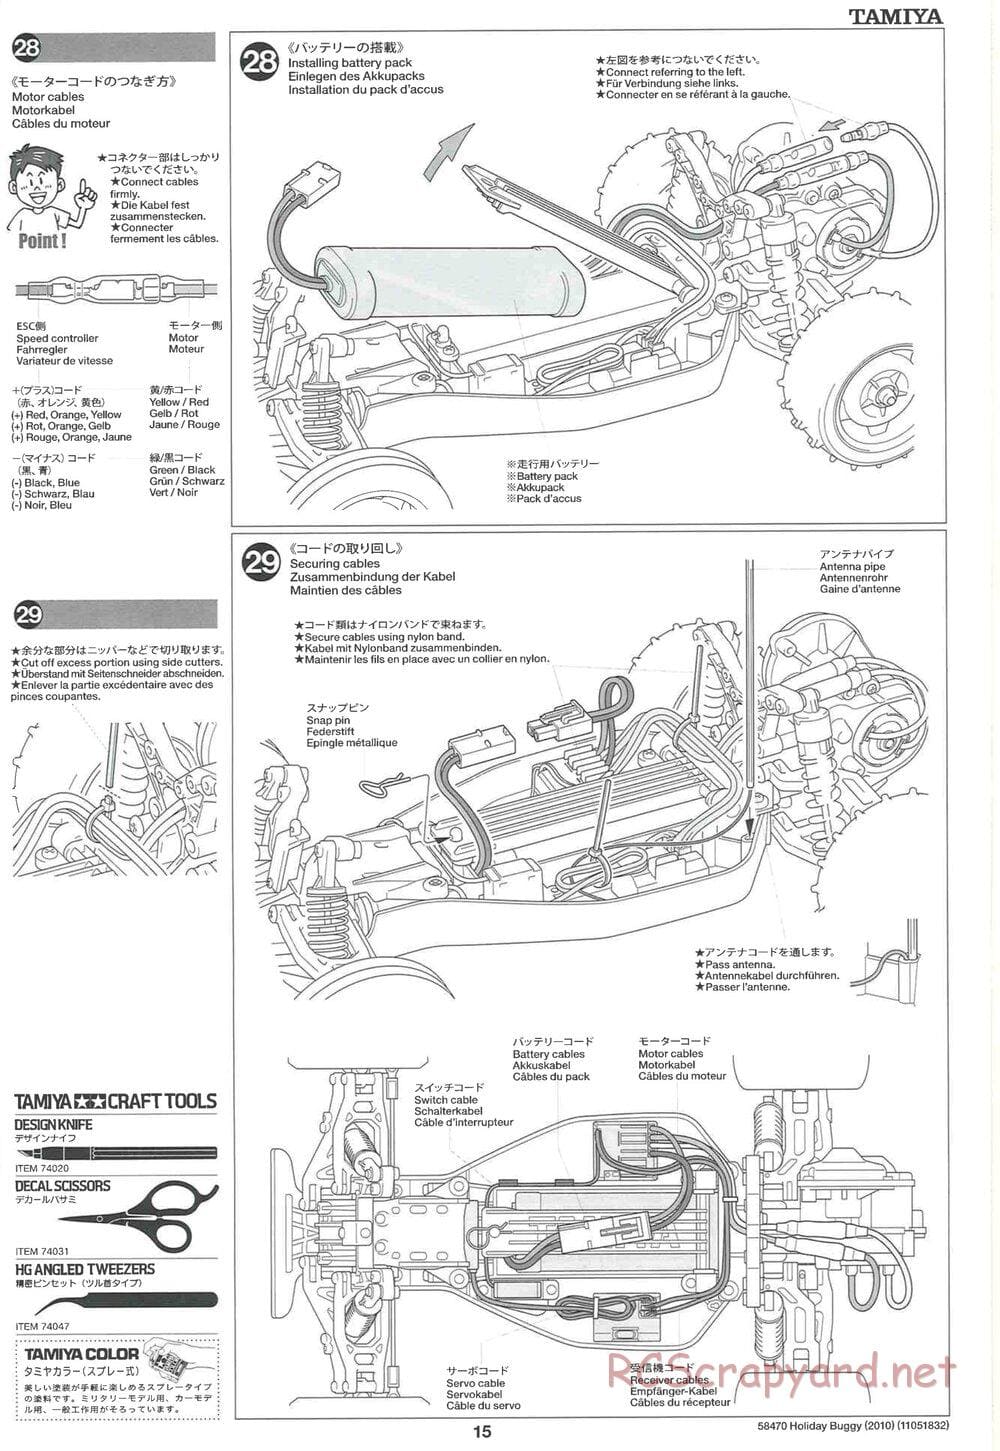 Tamiya - Holiday Buggy 2010 Chassis - Manual - Page 15